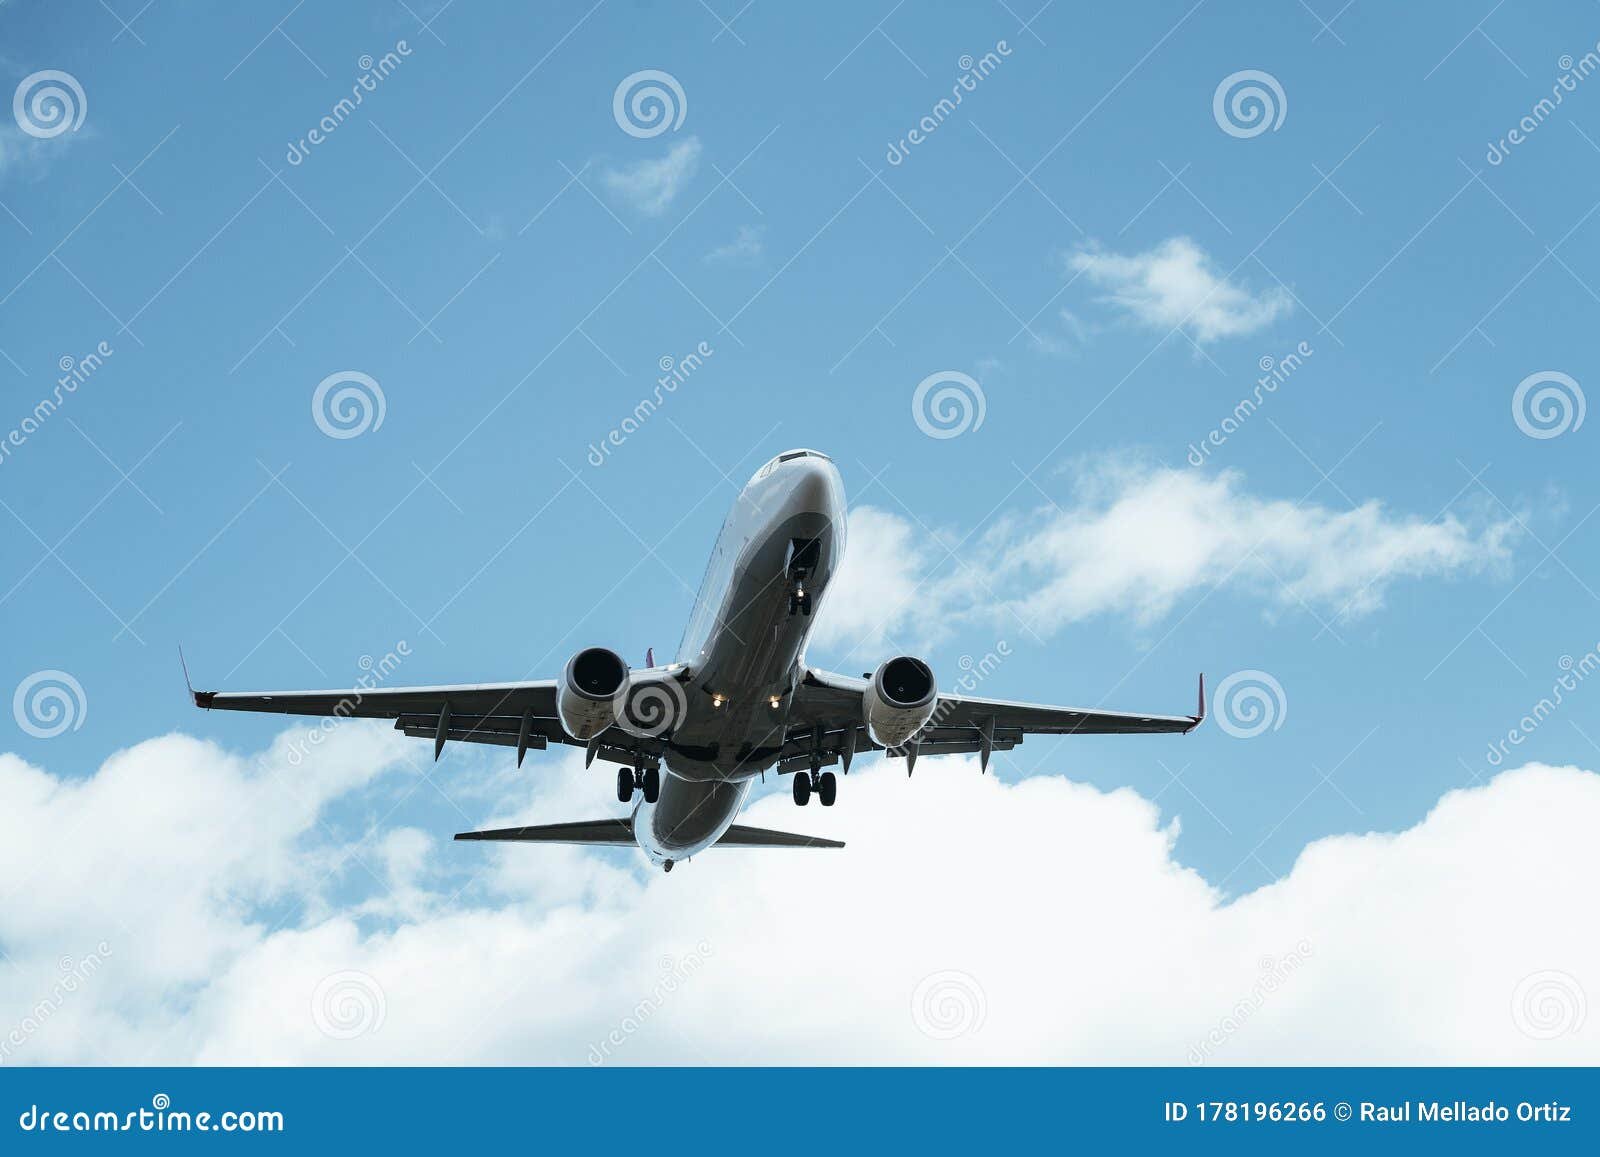 avion despegando con cielo despejado